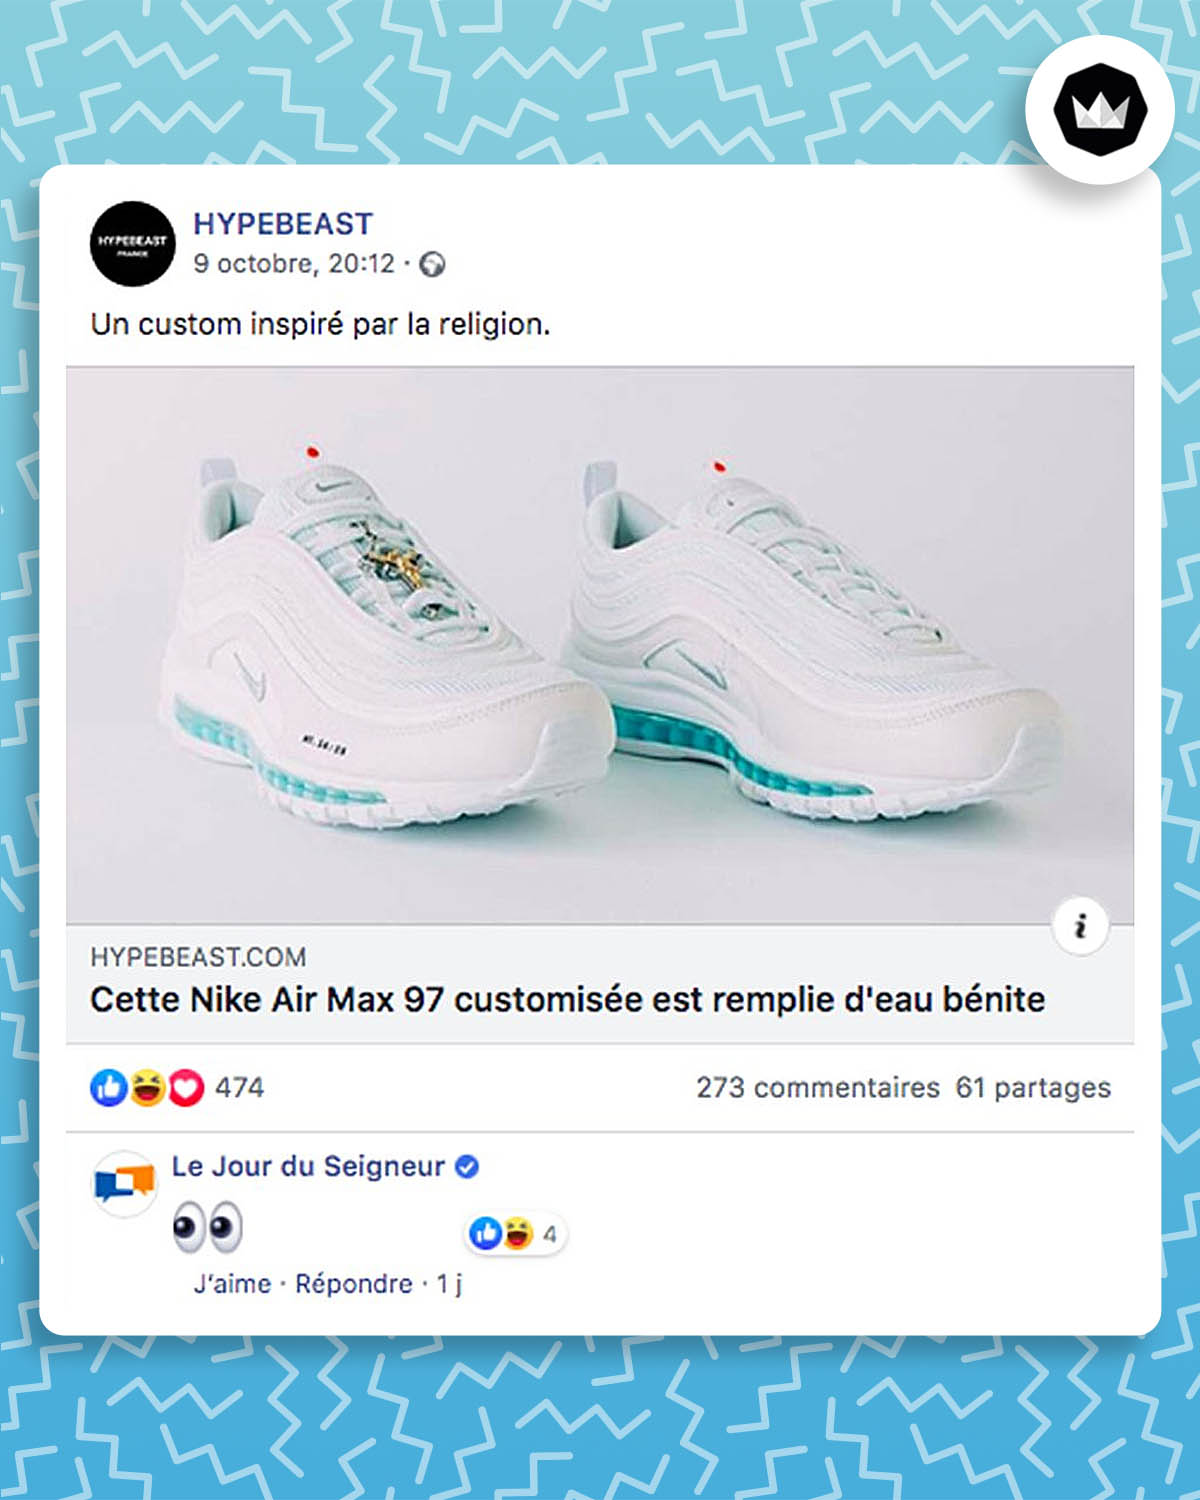 Une publication Facebook annonce une nouvelle paire de chaussures Nike Air Max 97 customisée remplie d'eau bénite. 
Le compte Facebook "Le jour du Seigneur" répond en commentaire un simple emoji "yeux".